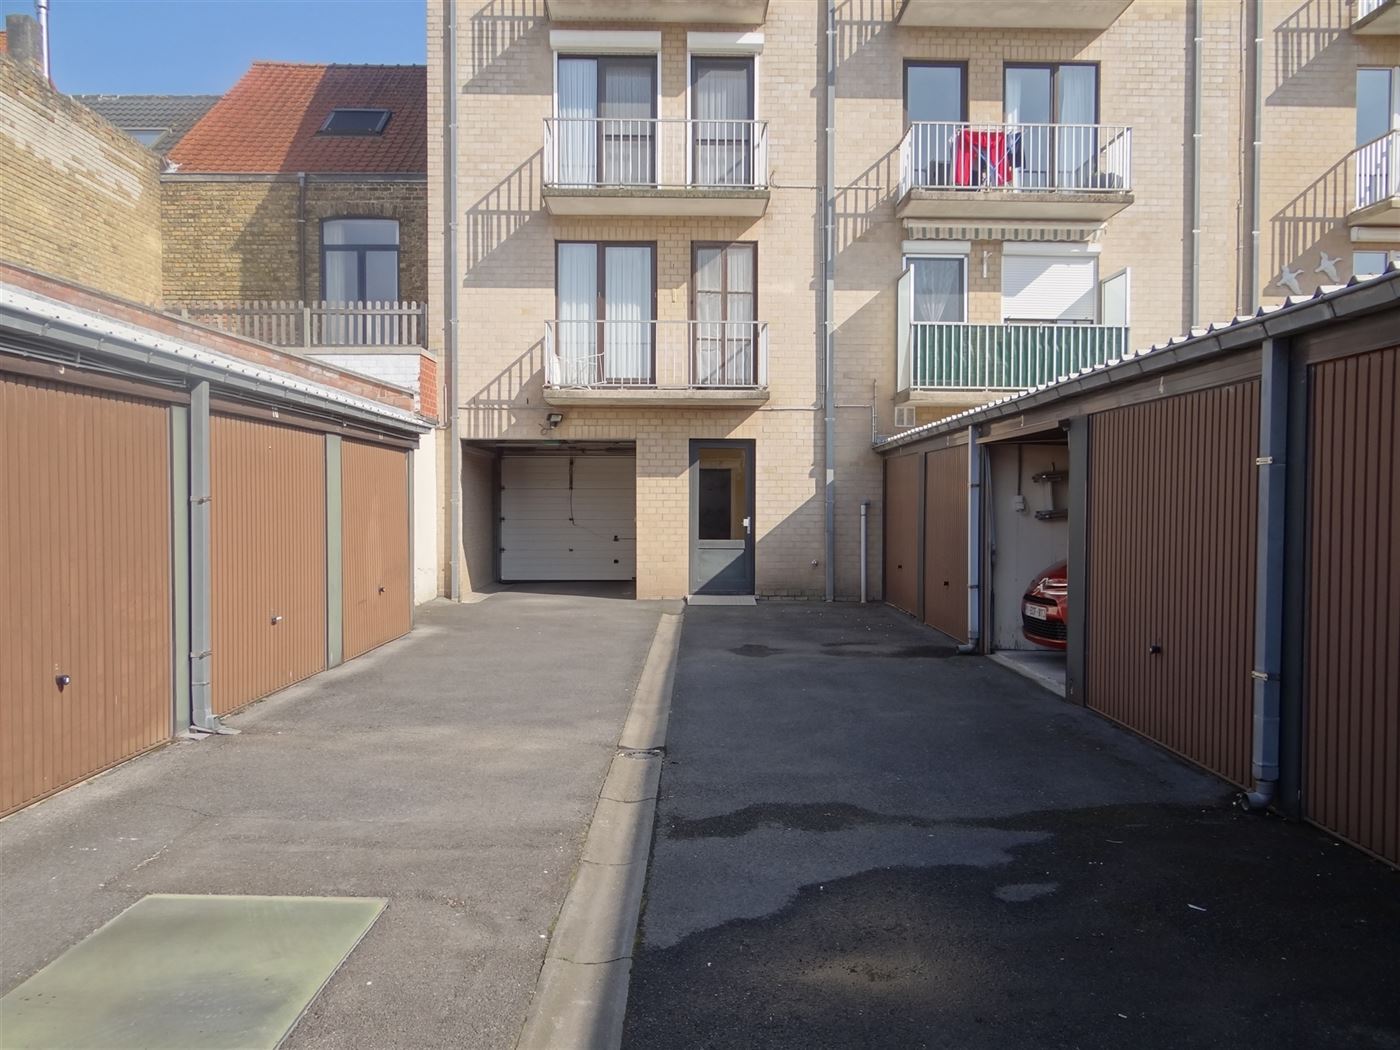 Res. Huyze Eekhoorn 0001 - Ruim appartement met drie slaapkamers en dubbele garage - Op enkele stappen van de Markt in Nieuwpoort-Stad - Eigen inkomde...